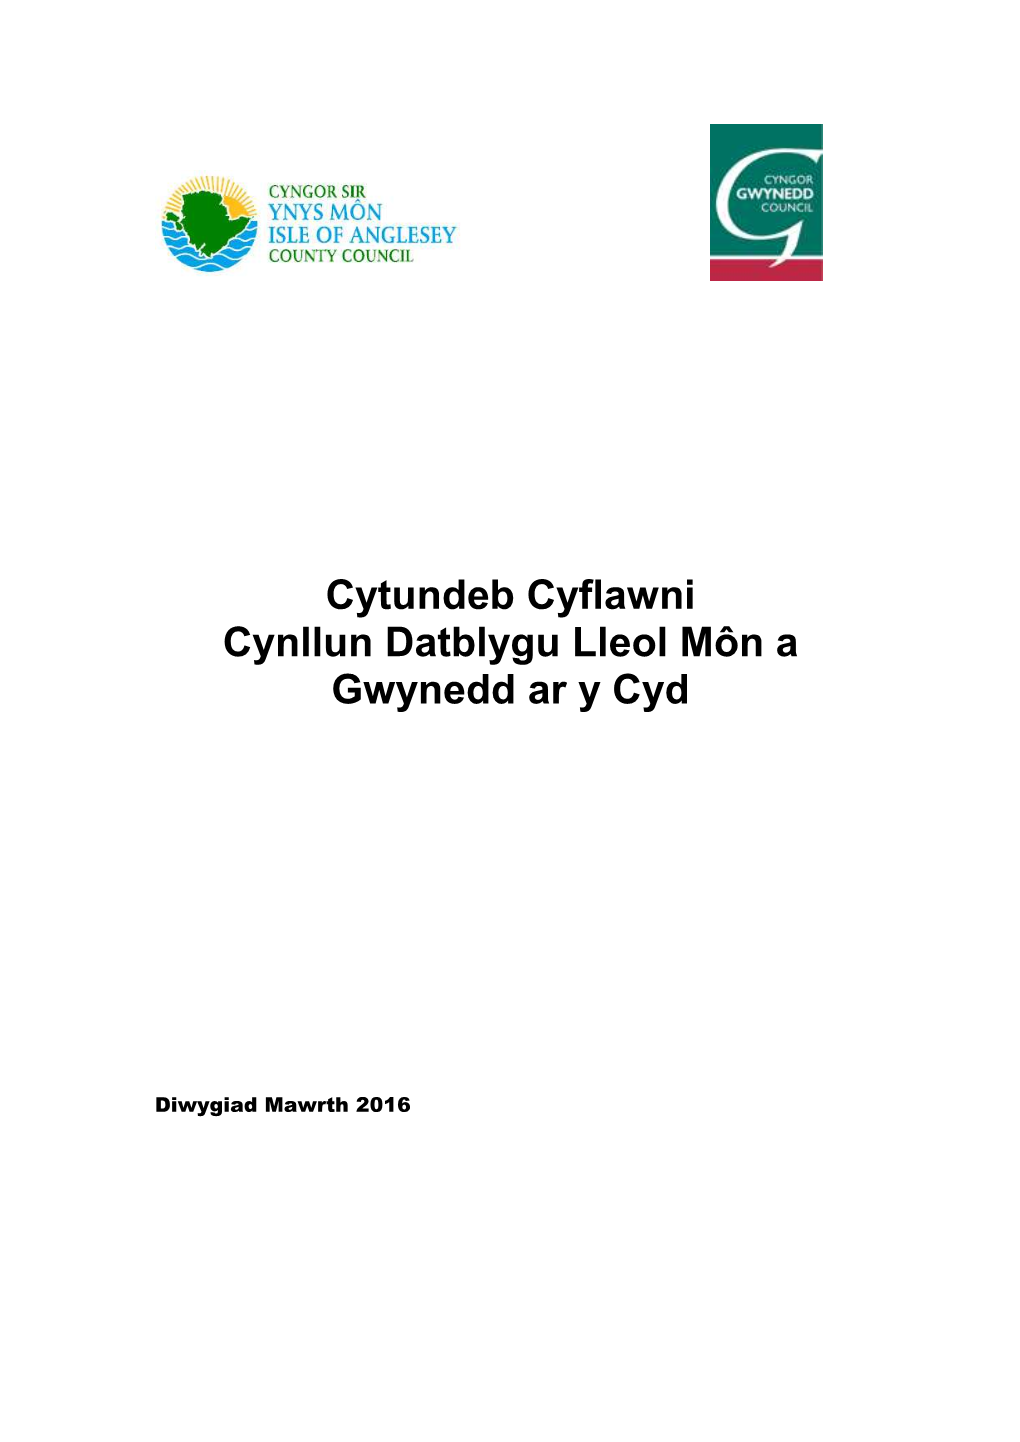 Cytundeb Cyflawni Cynllun Datblygu Lleol Môn a Gwynedd Ar Y Cyd